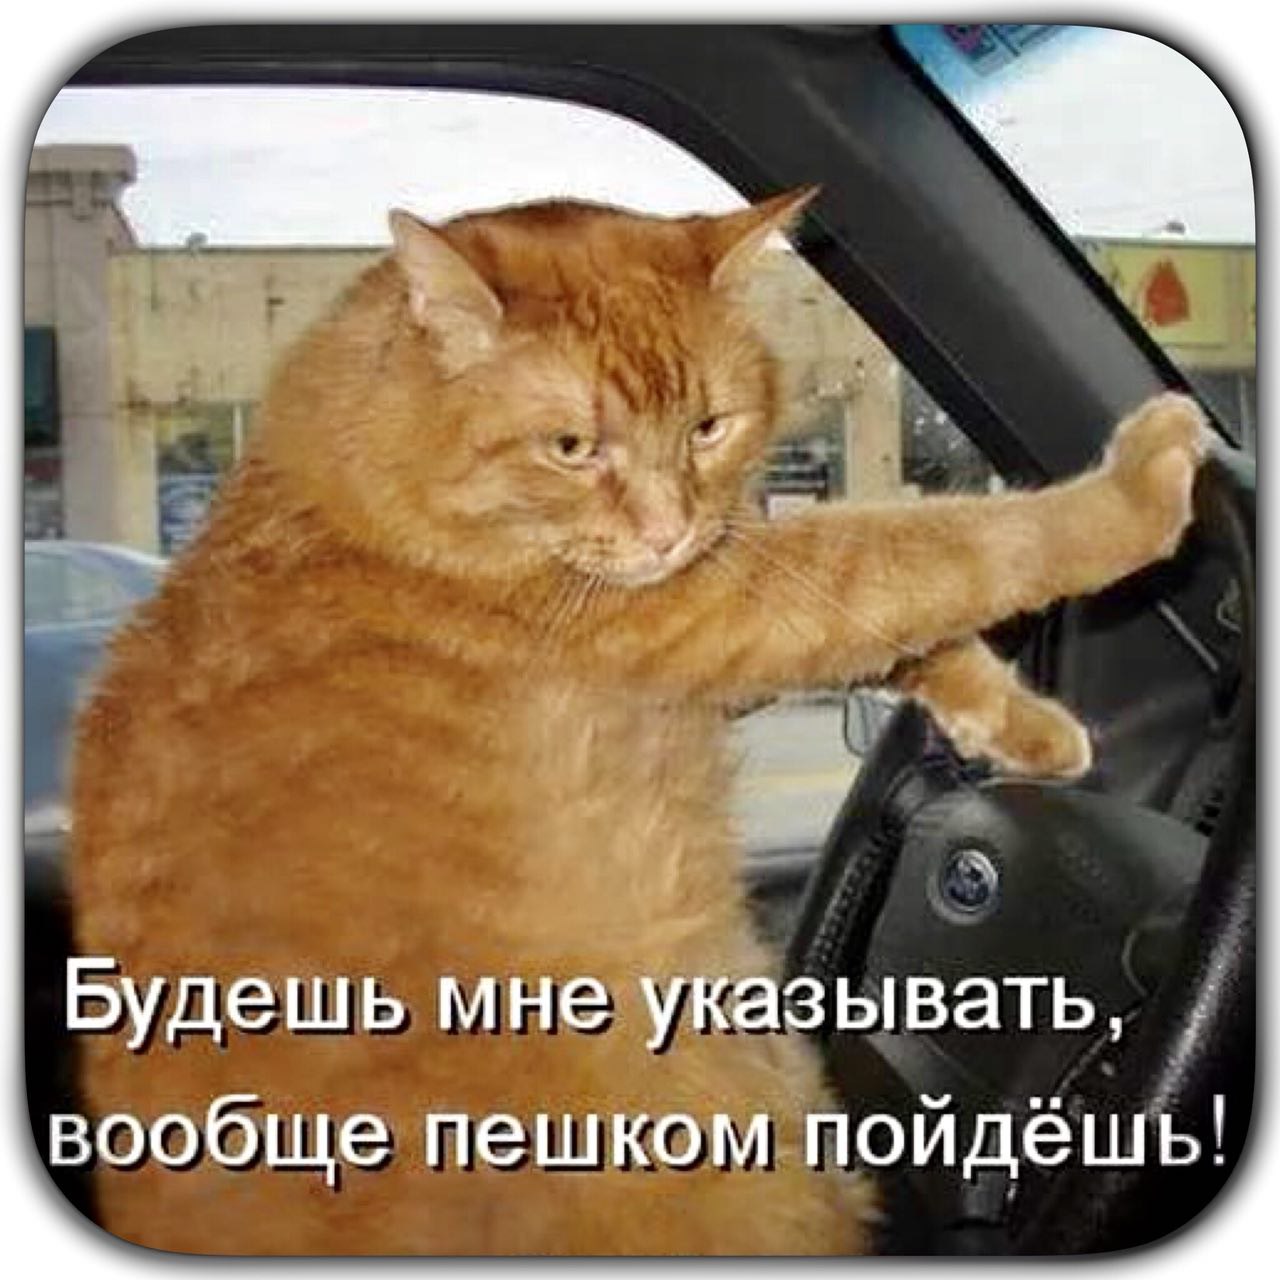 Рыжая кошка за рулем